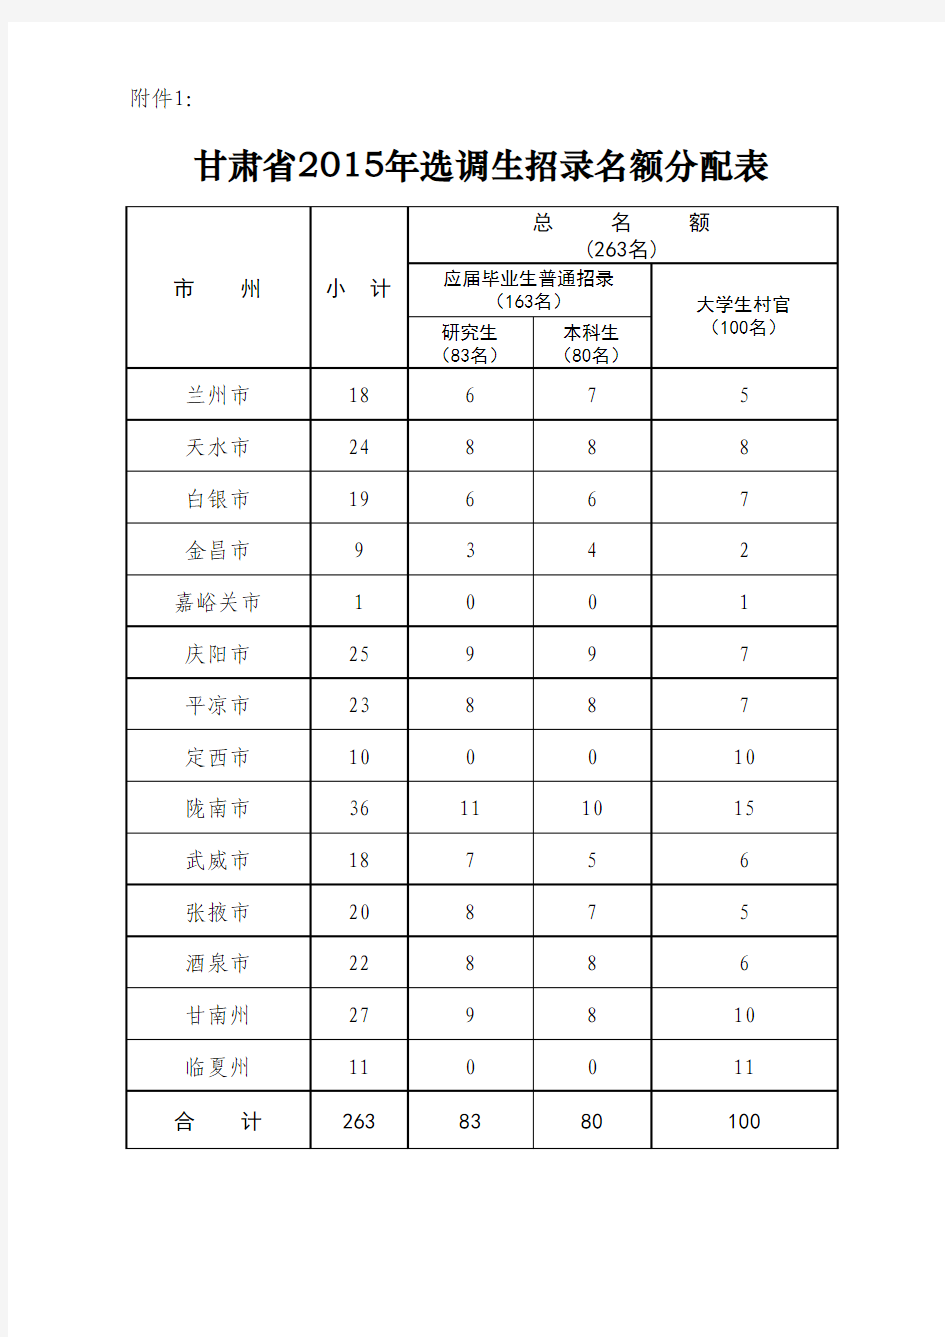 甘肃省2015年选调生招录名额分配表